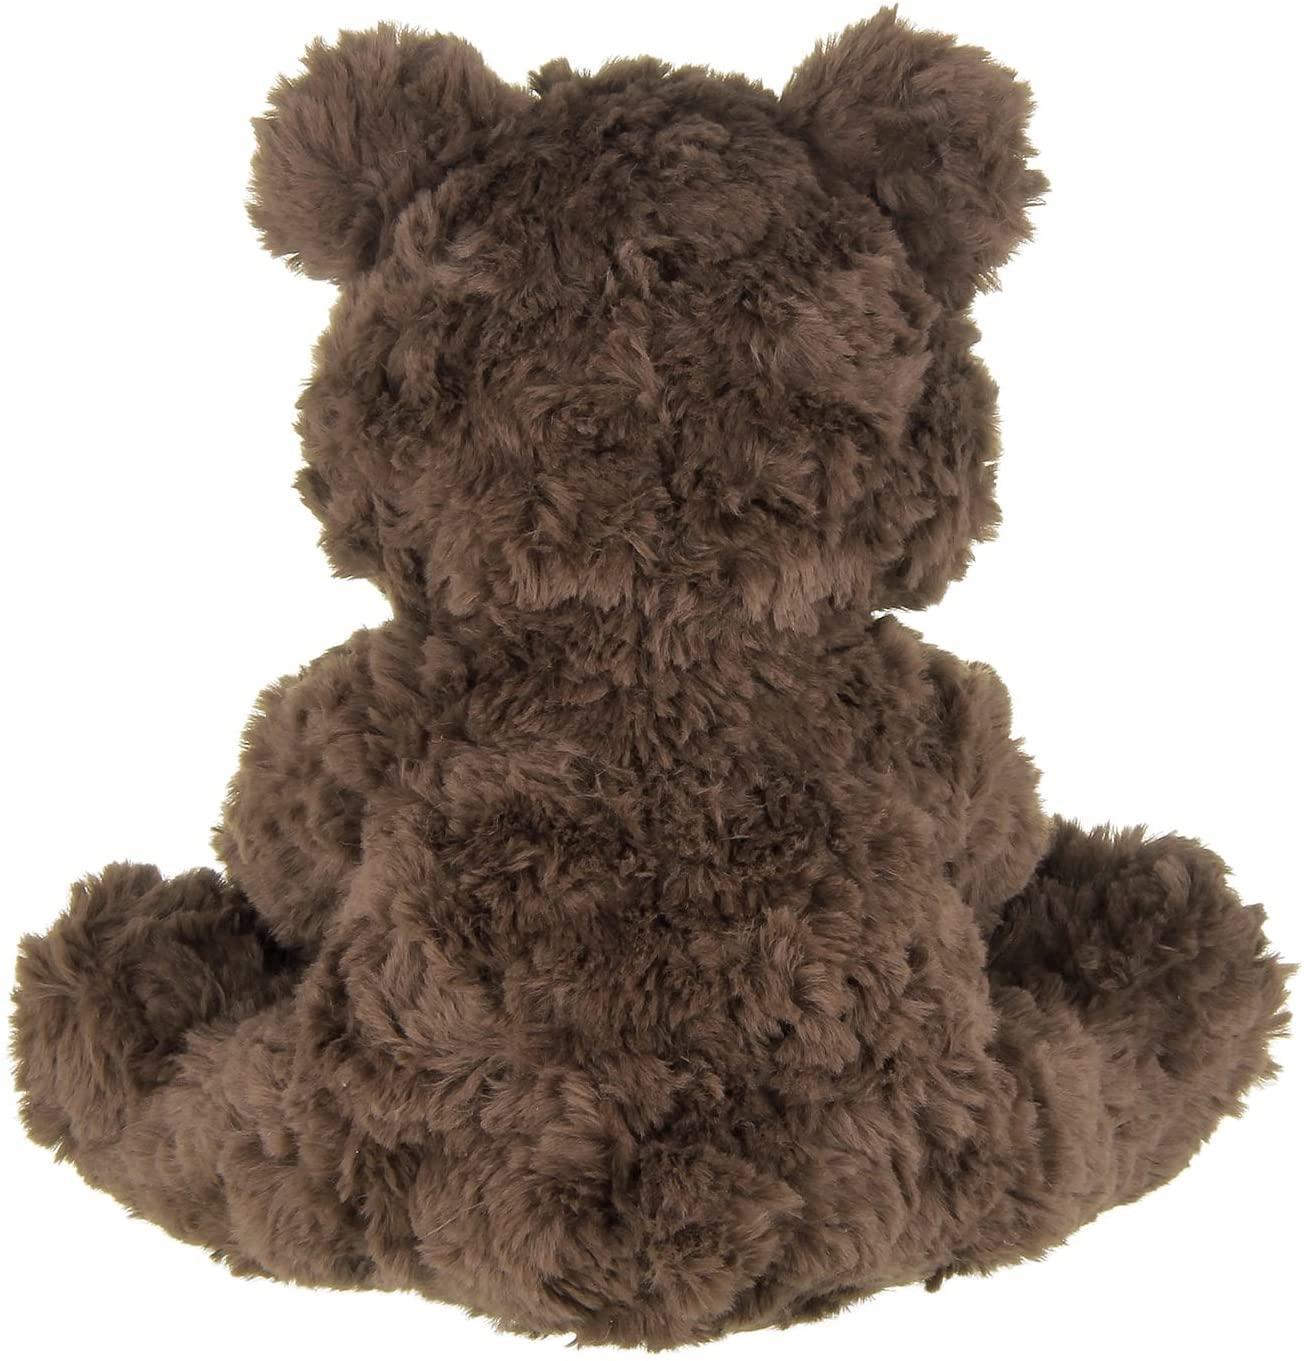 Bearington Collection | Clancy the Teddy Bear